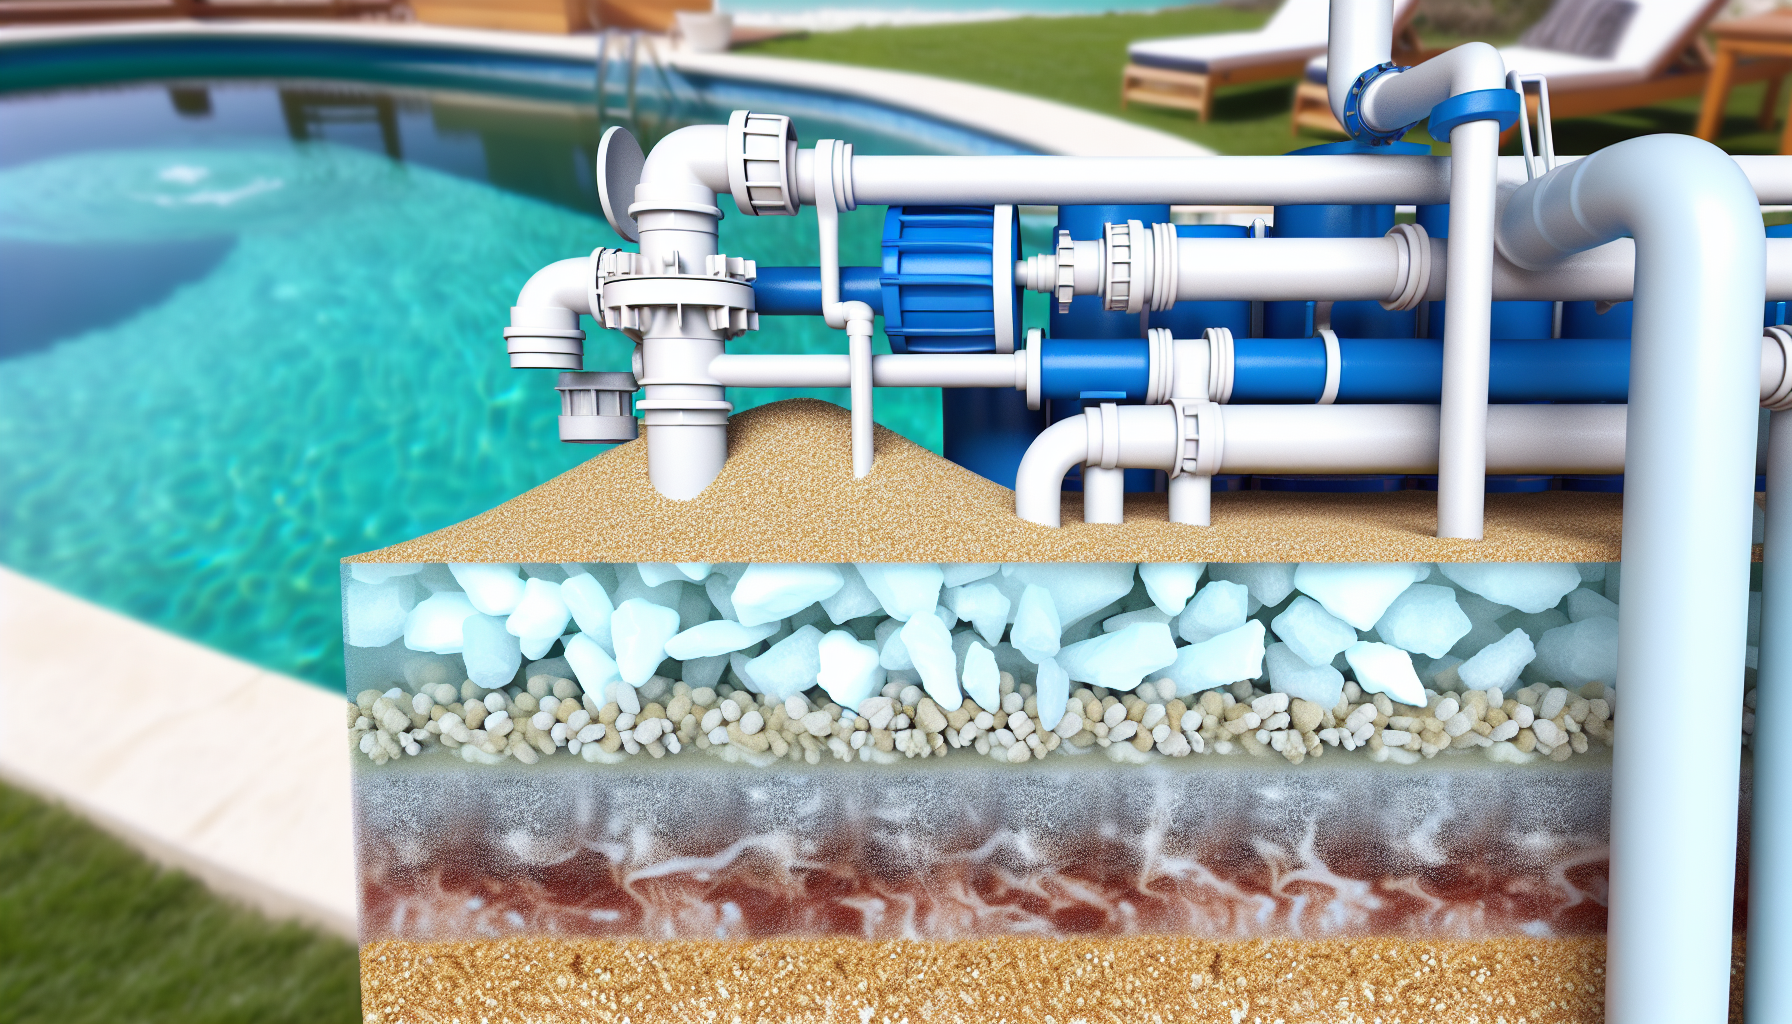 Querschnitt eines Pools mit dargestellten Wasseraufbereitungsanlagen und verschiedenen Schichten der Filtration.